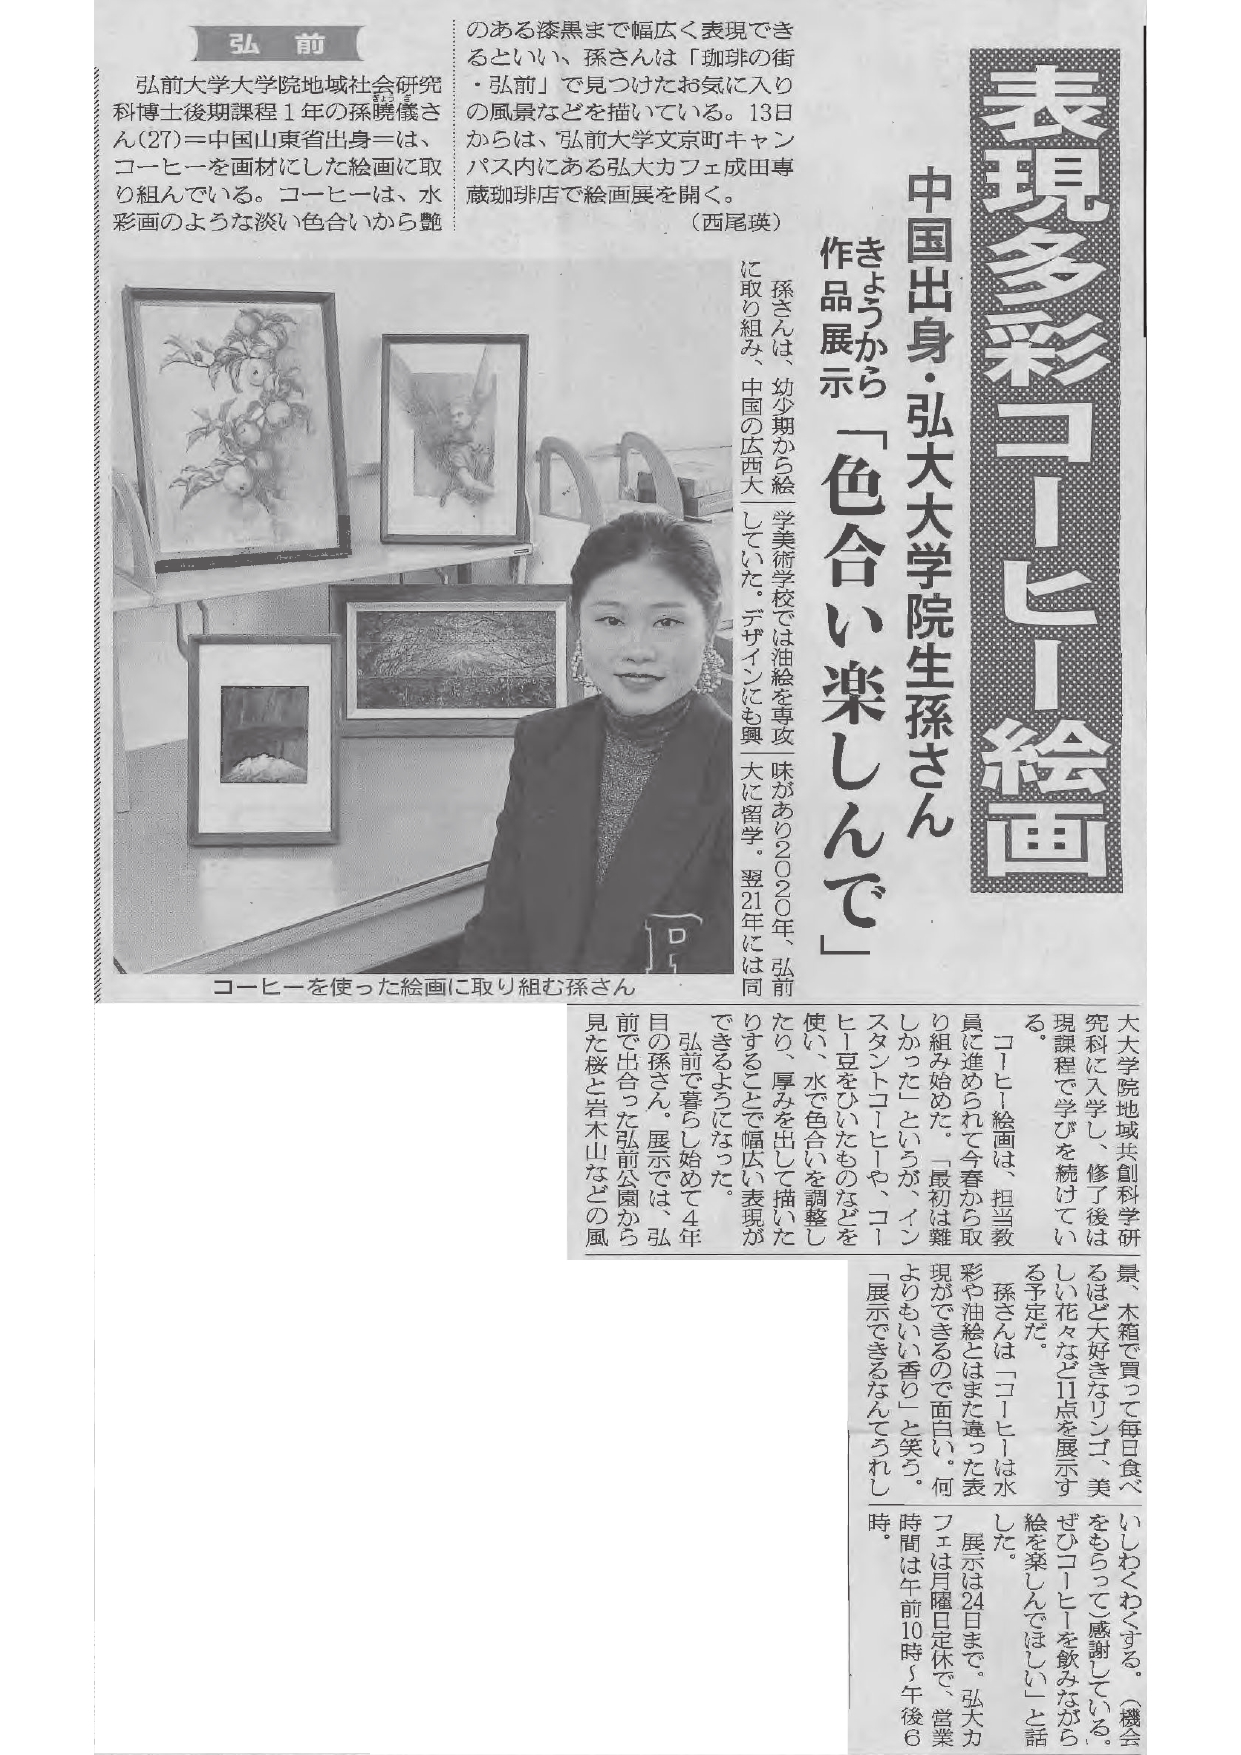 【在学生】孫暁儀さんの研究活動が新聞に掲載されました